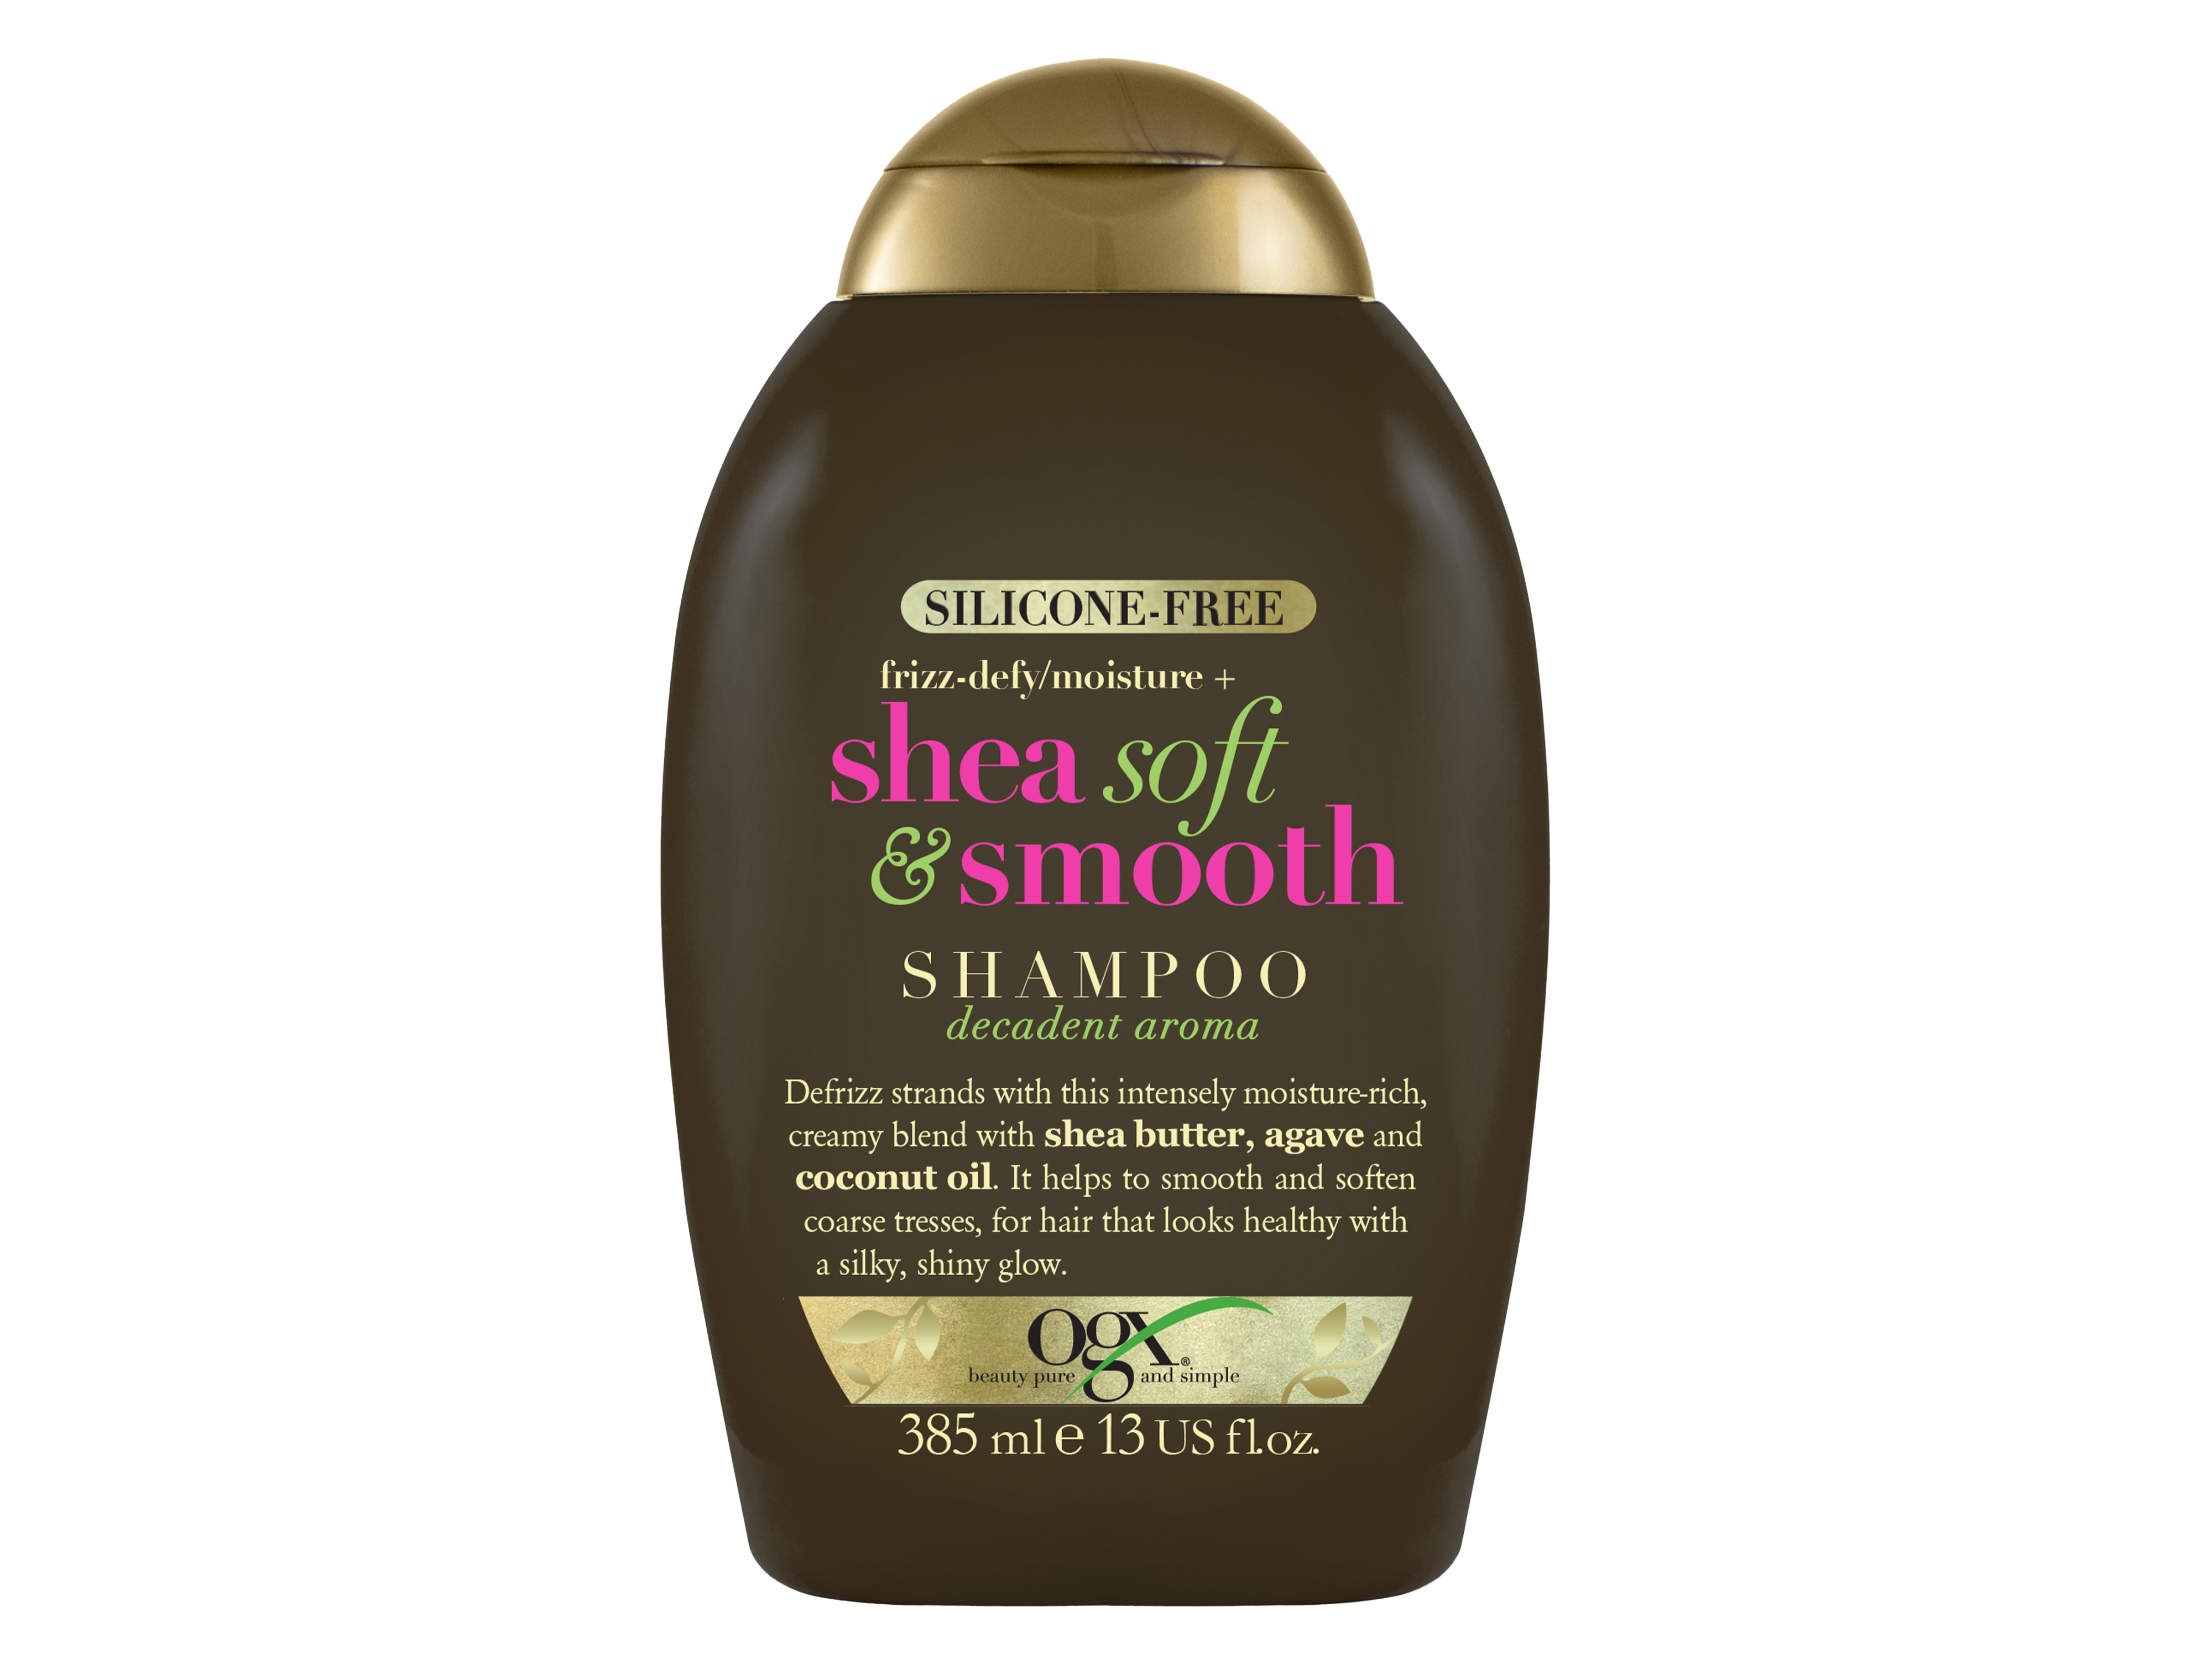 Ogx Shea Soft & Smooth Shampoo, 385